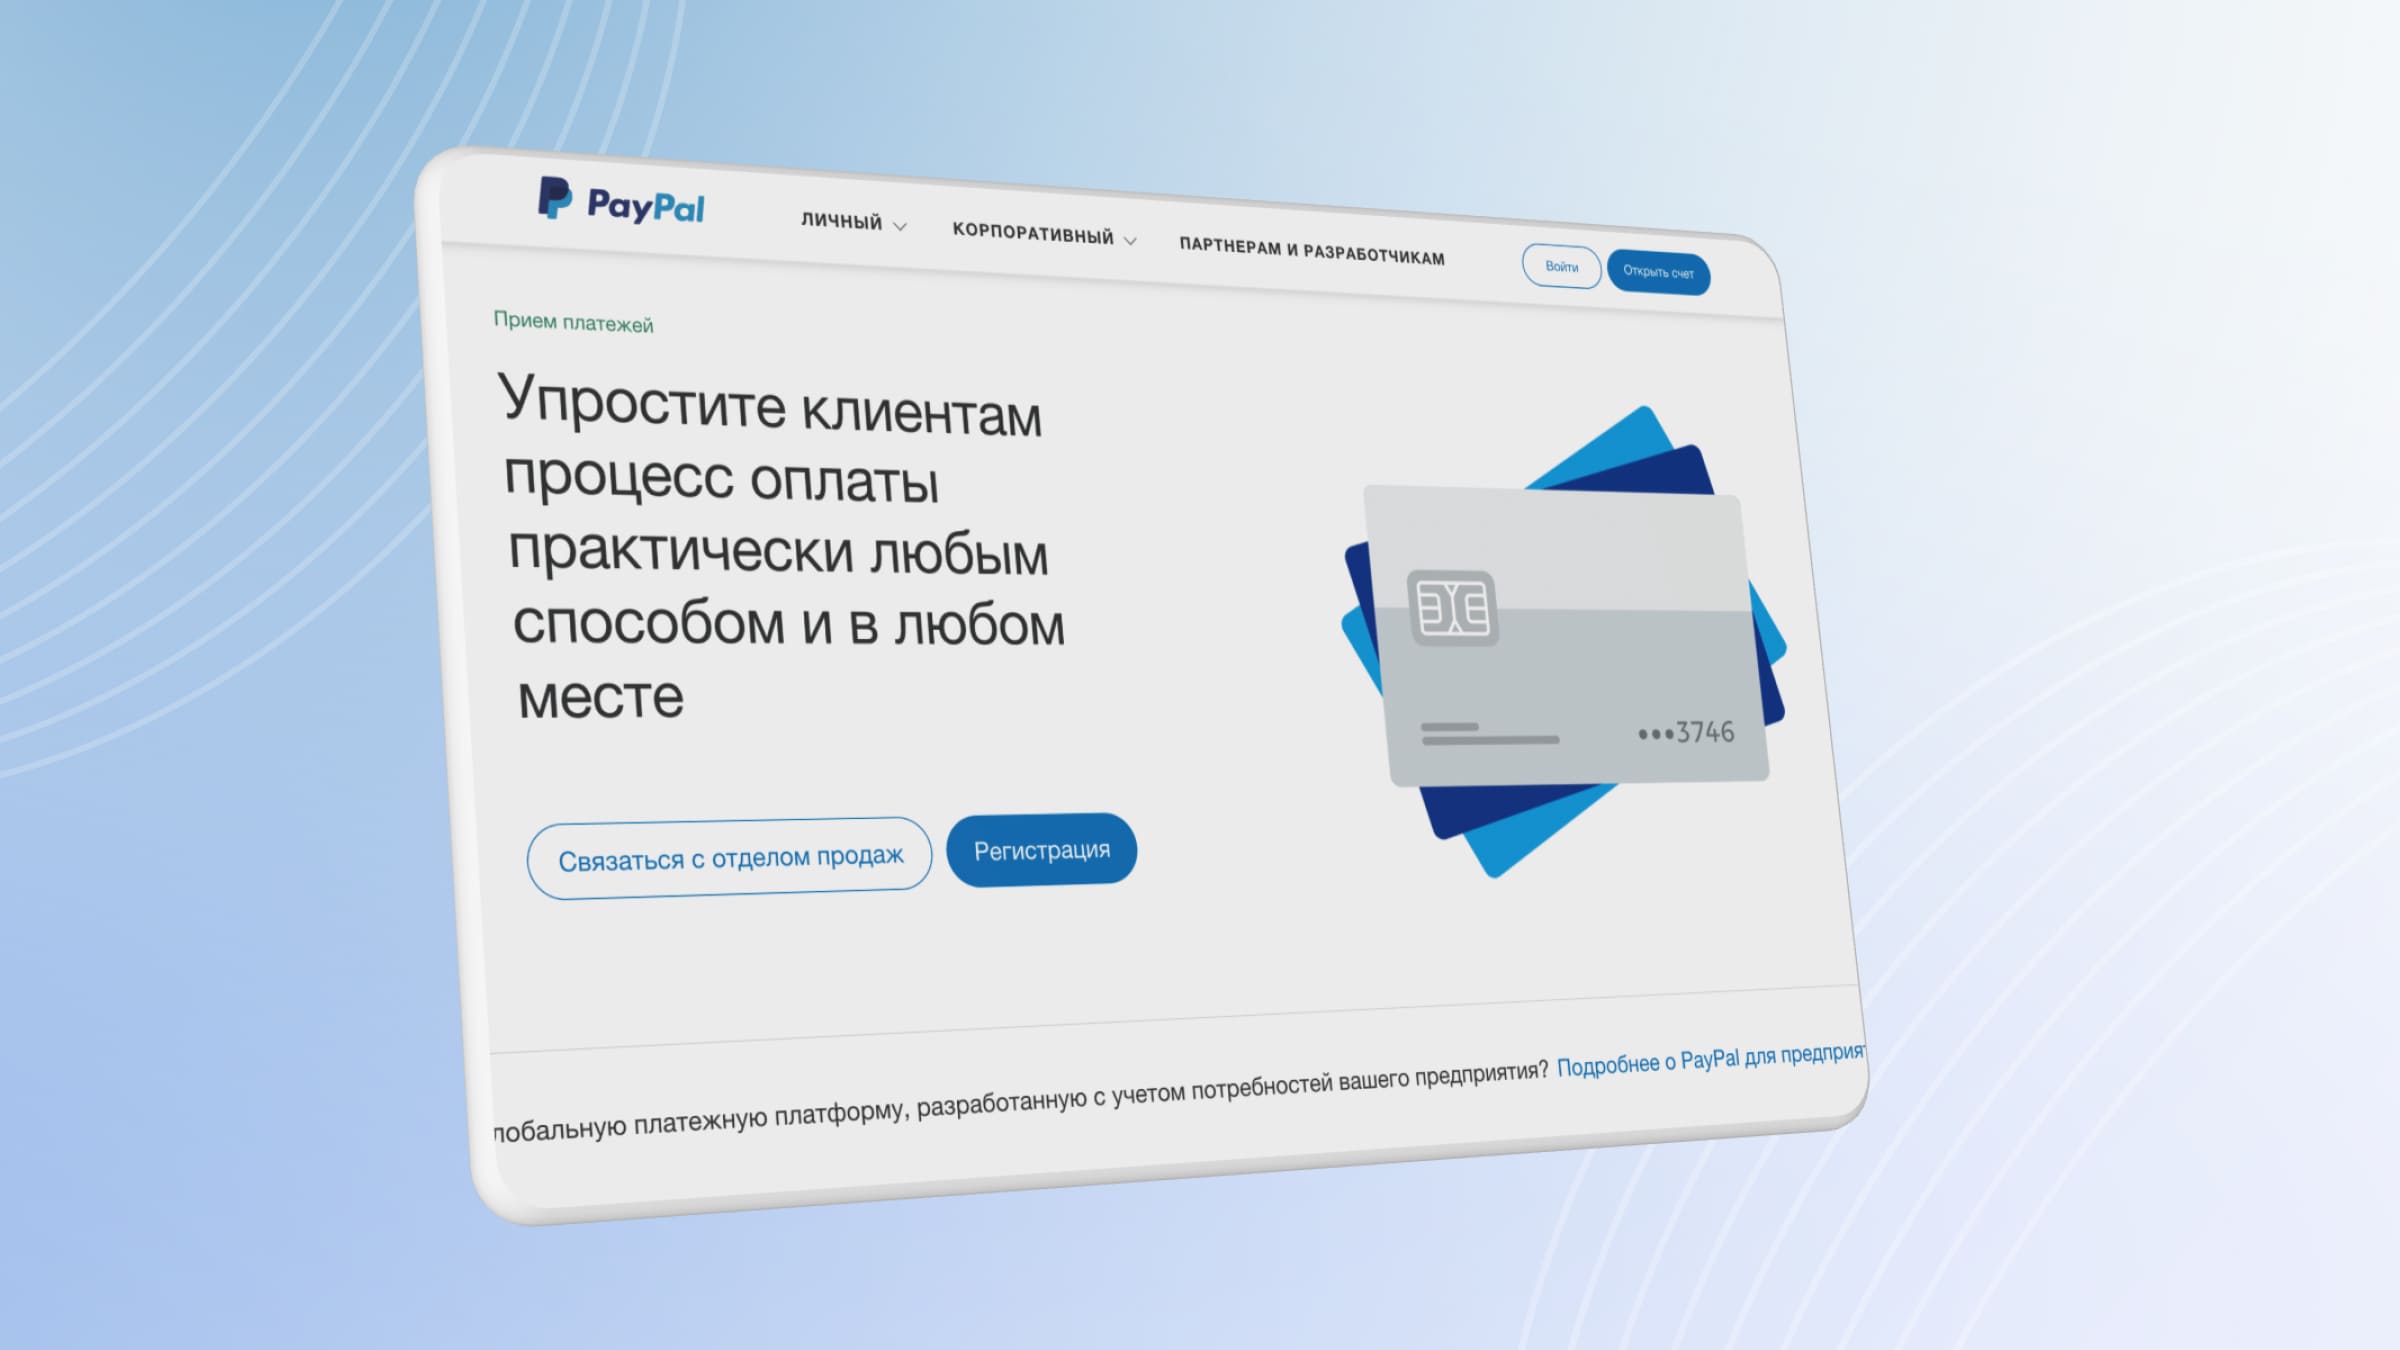 PayPal — международная система приема платежей для бизнеса.